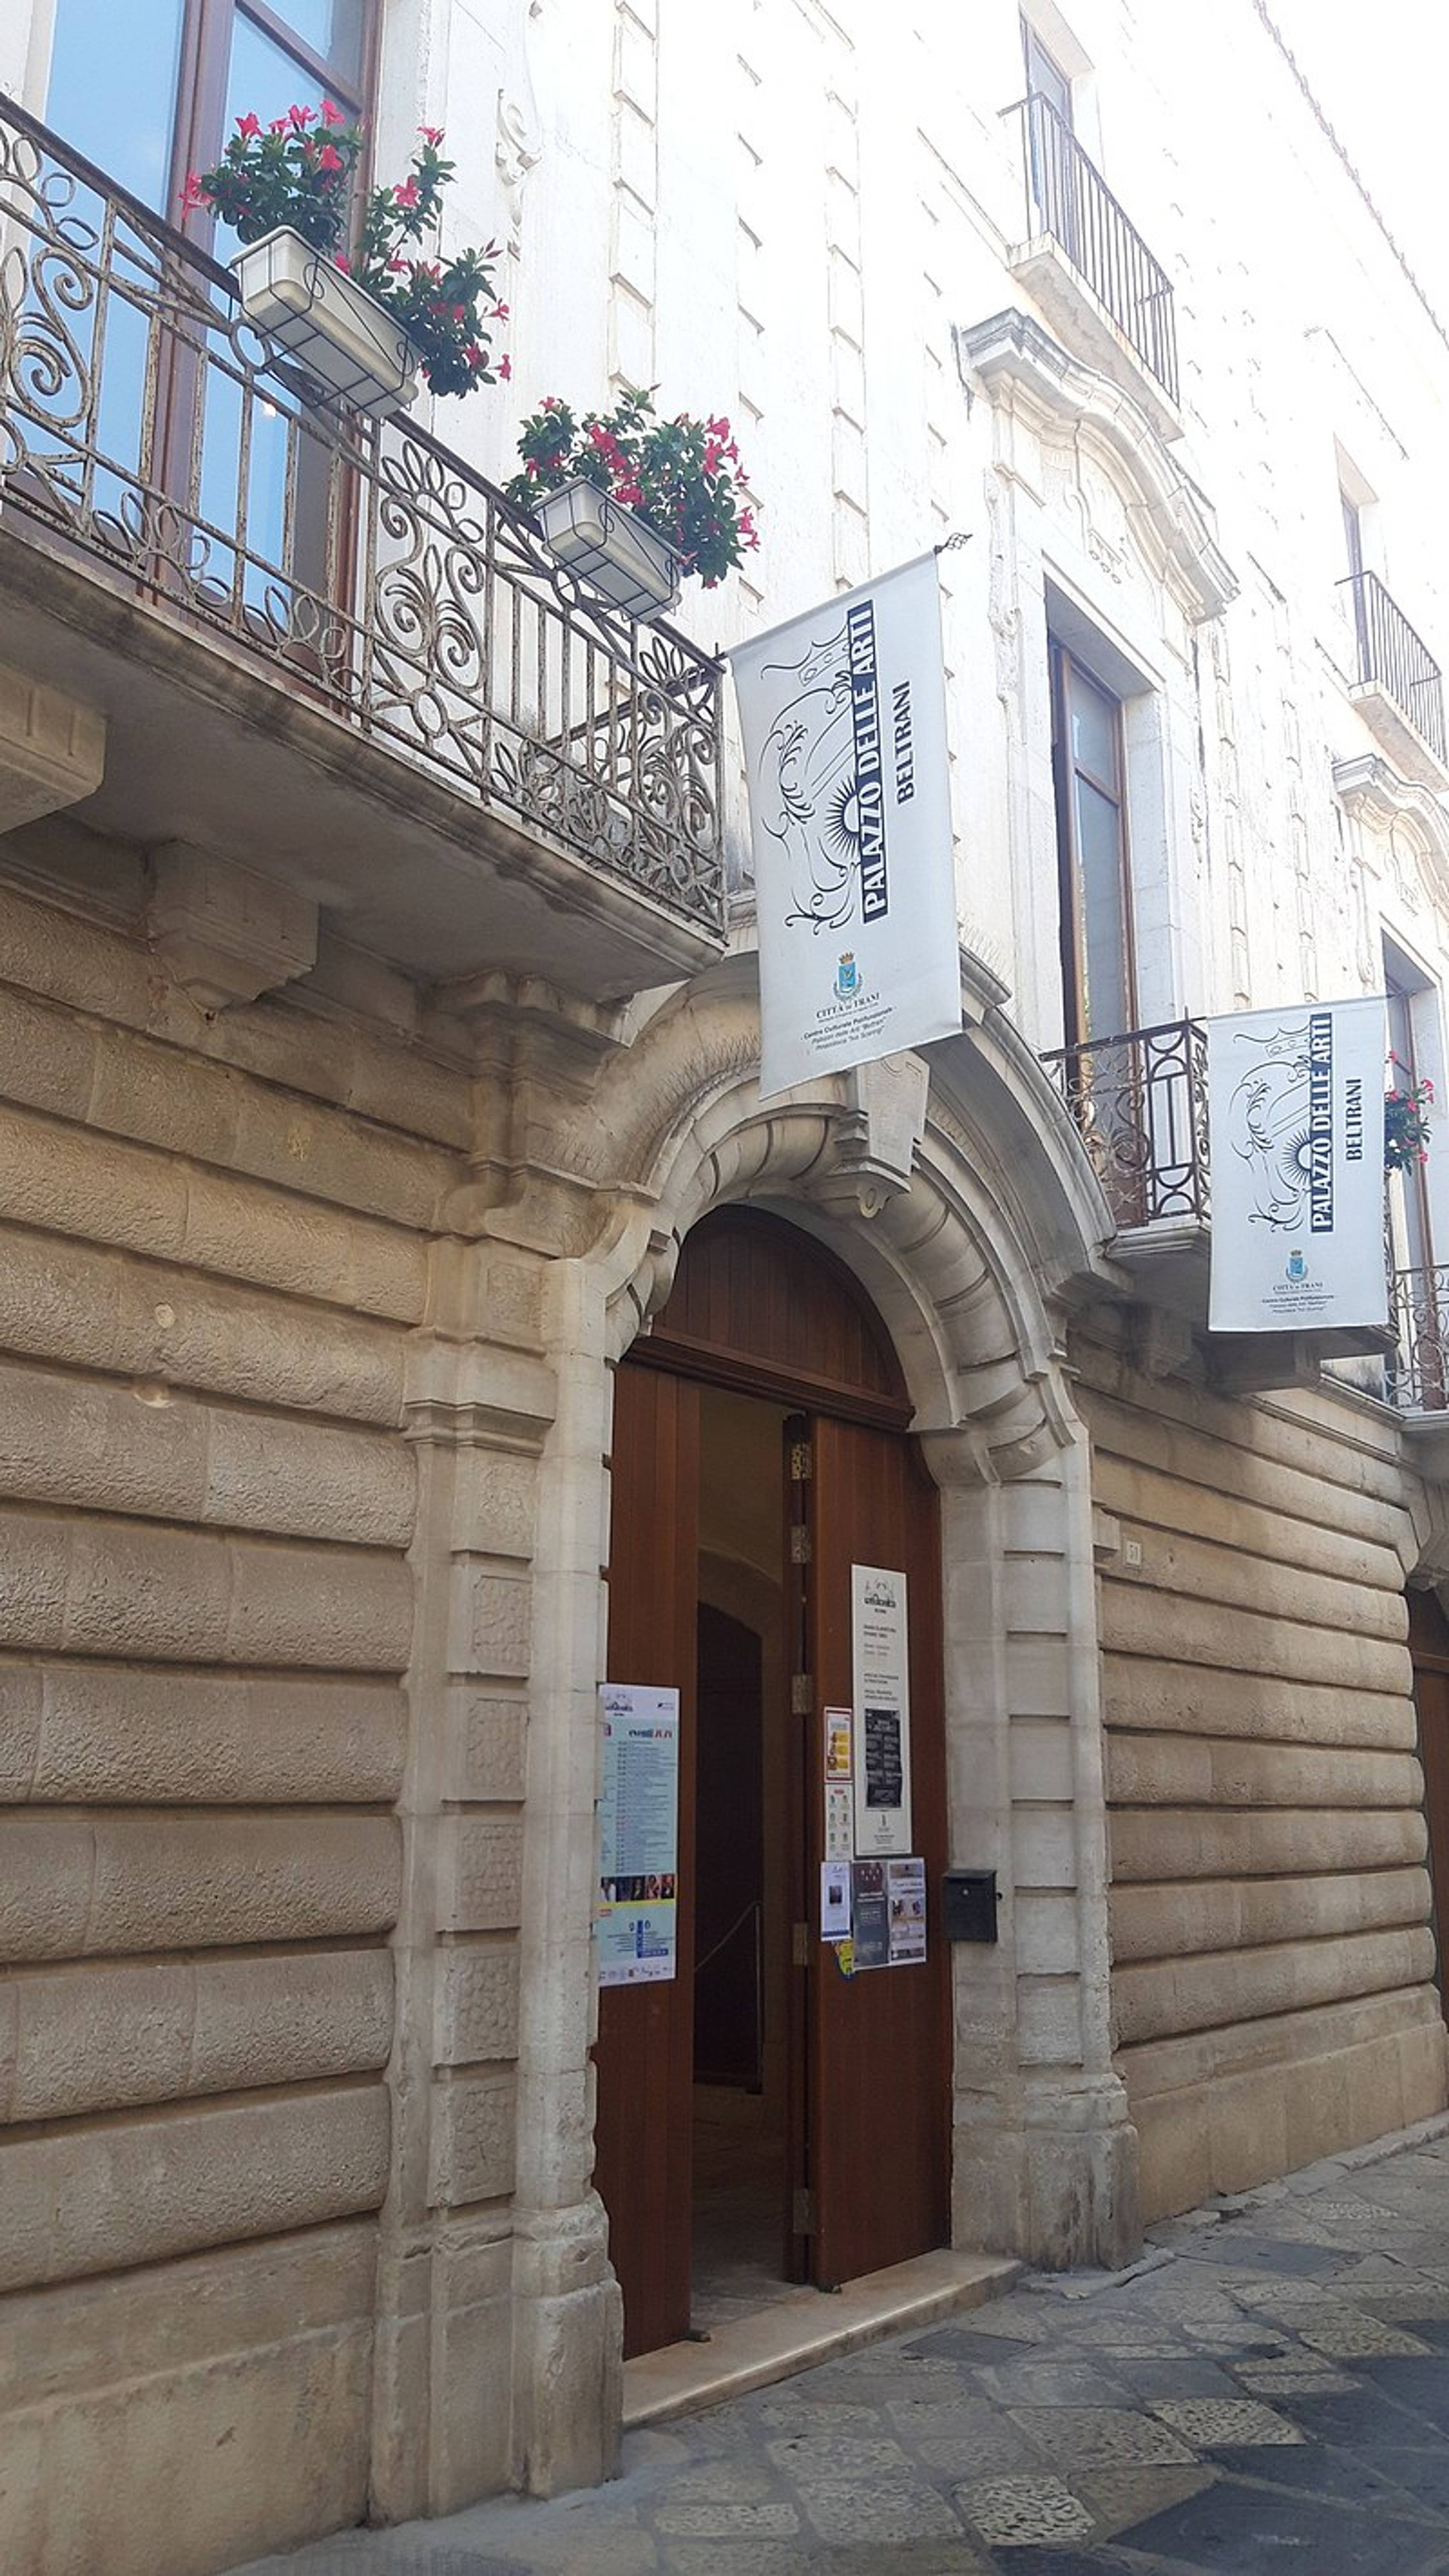 Palazzo delle Arti "Beltrani" - Pinacoteca "Ivo Scaringi"